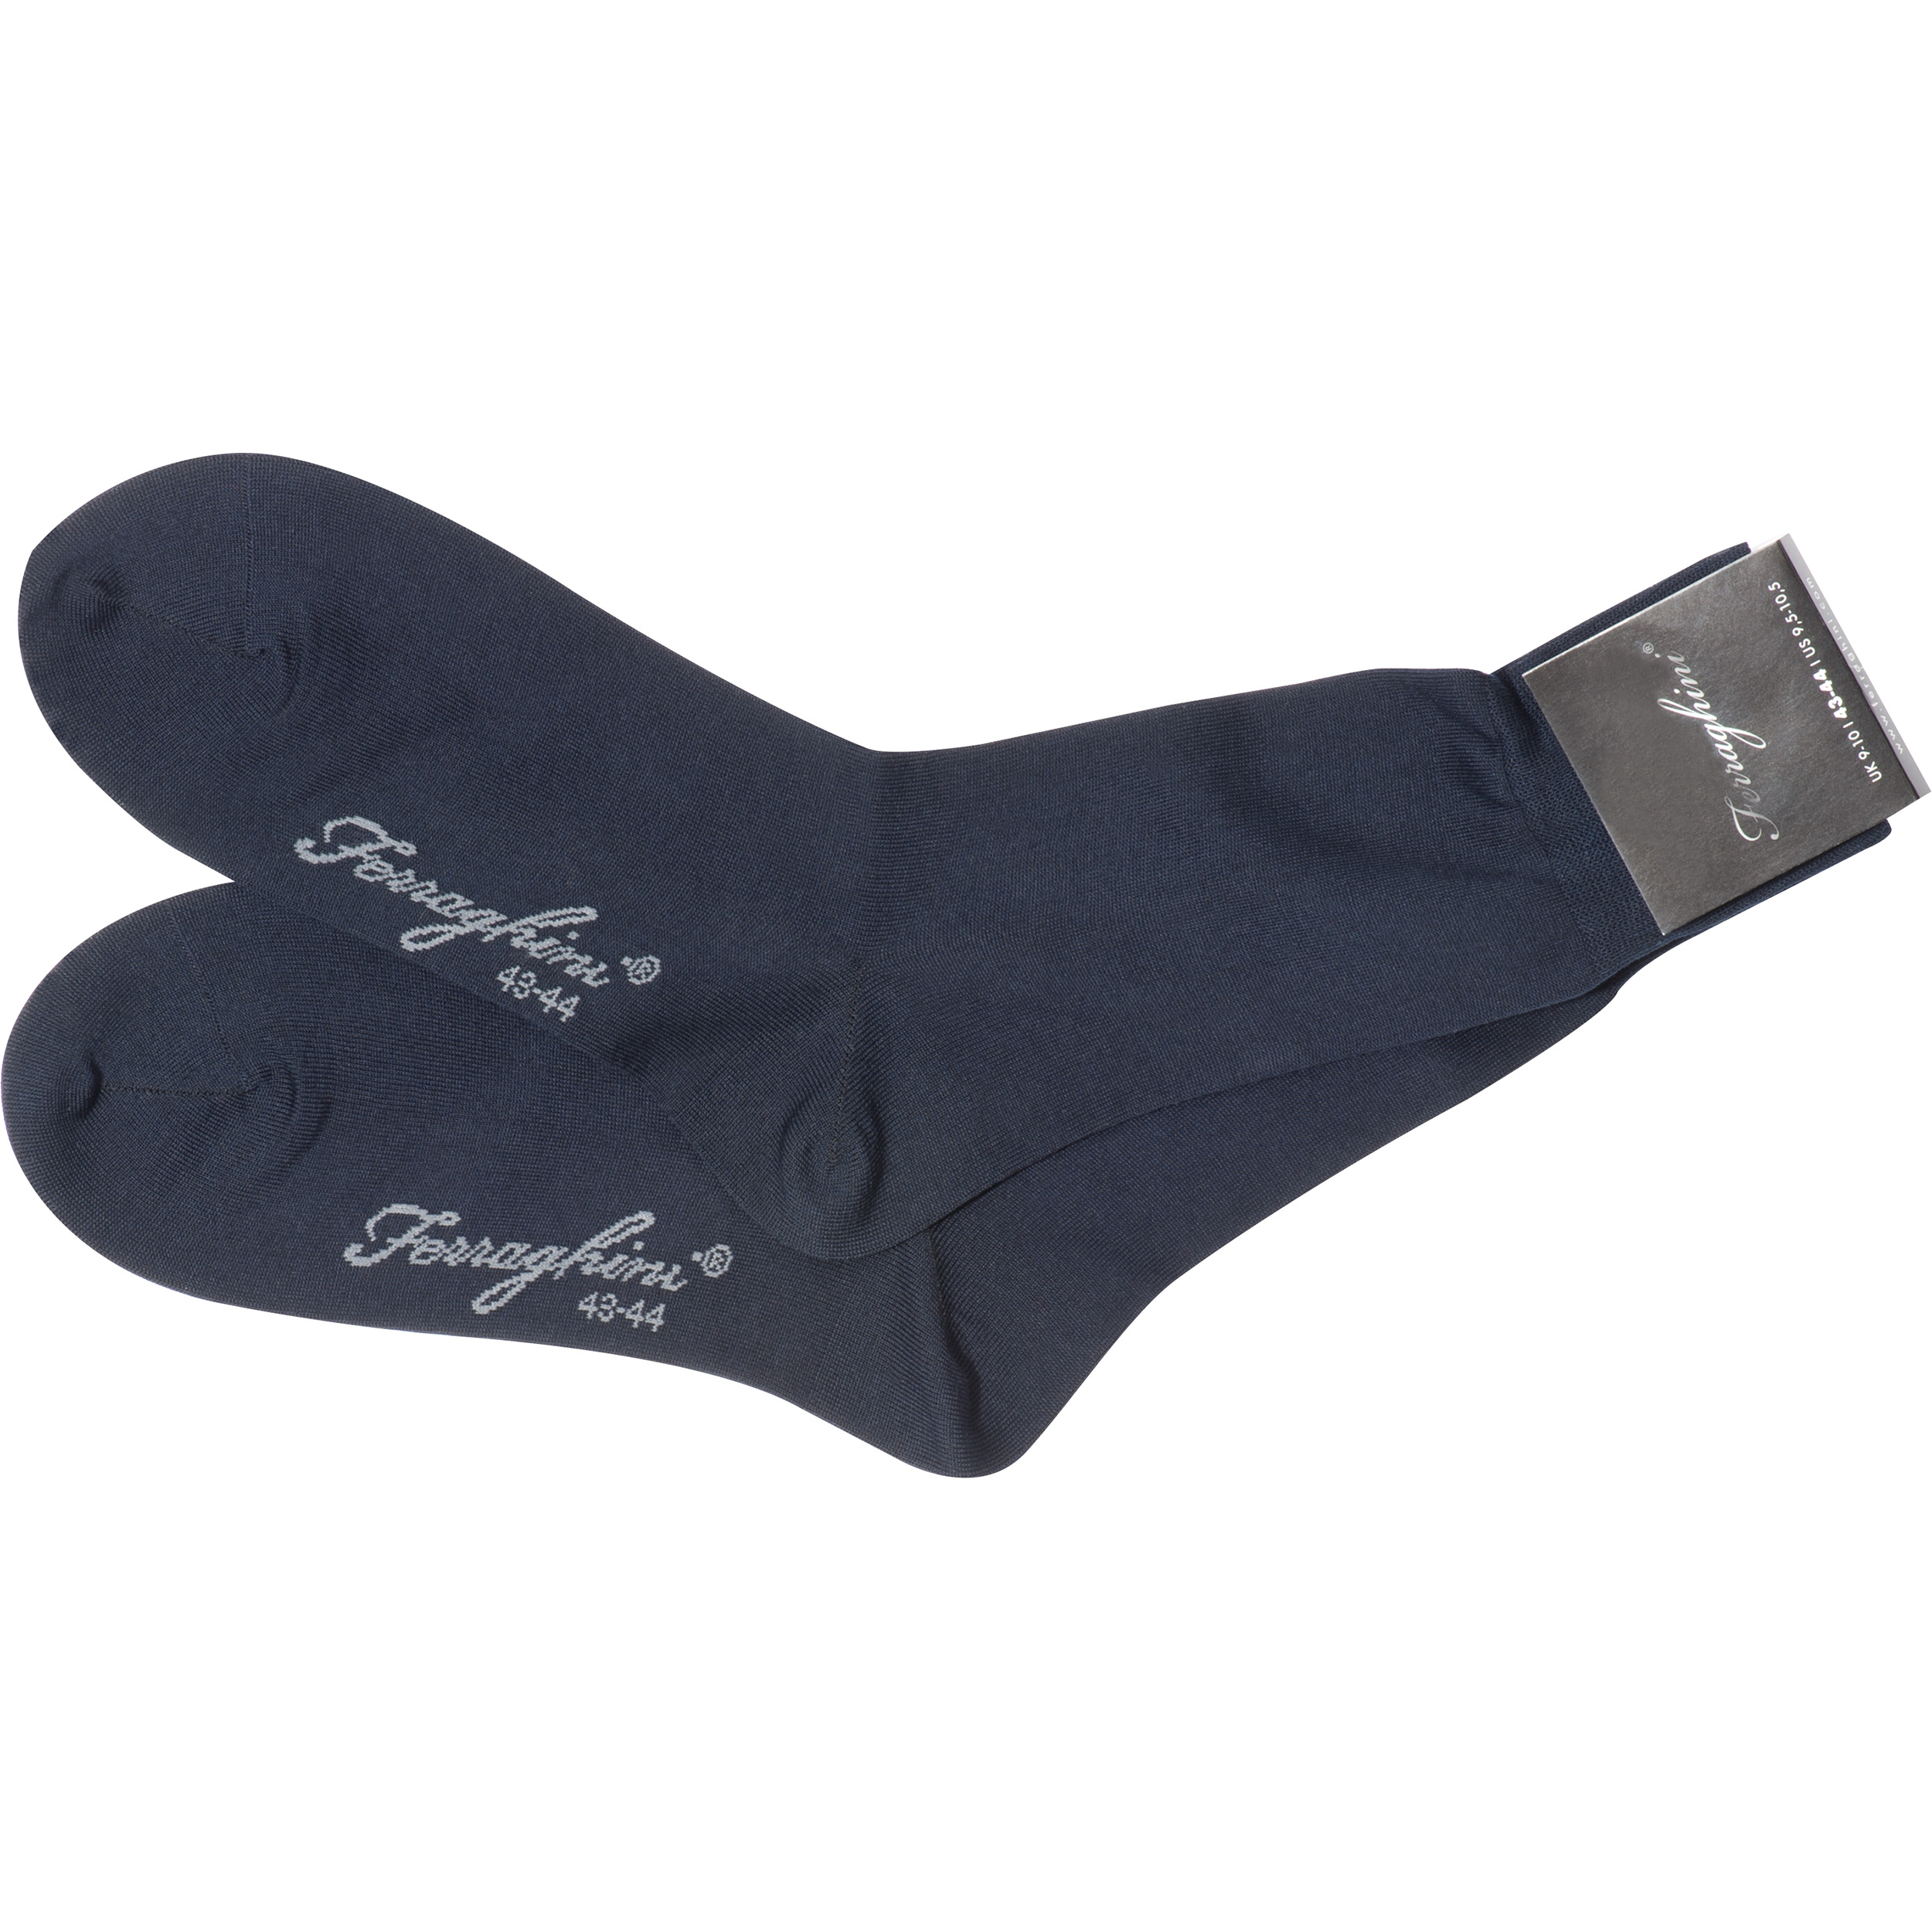 Ferraghini socks